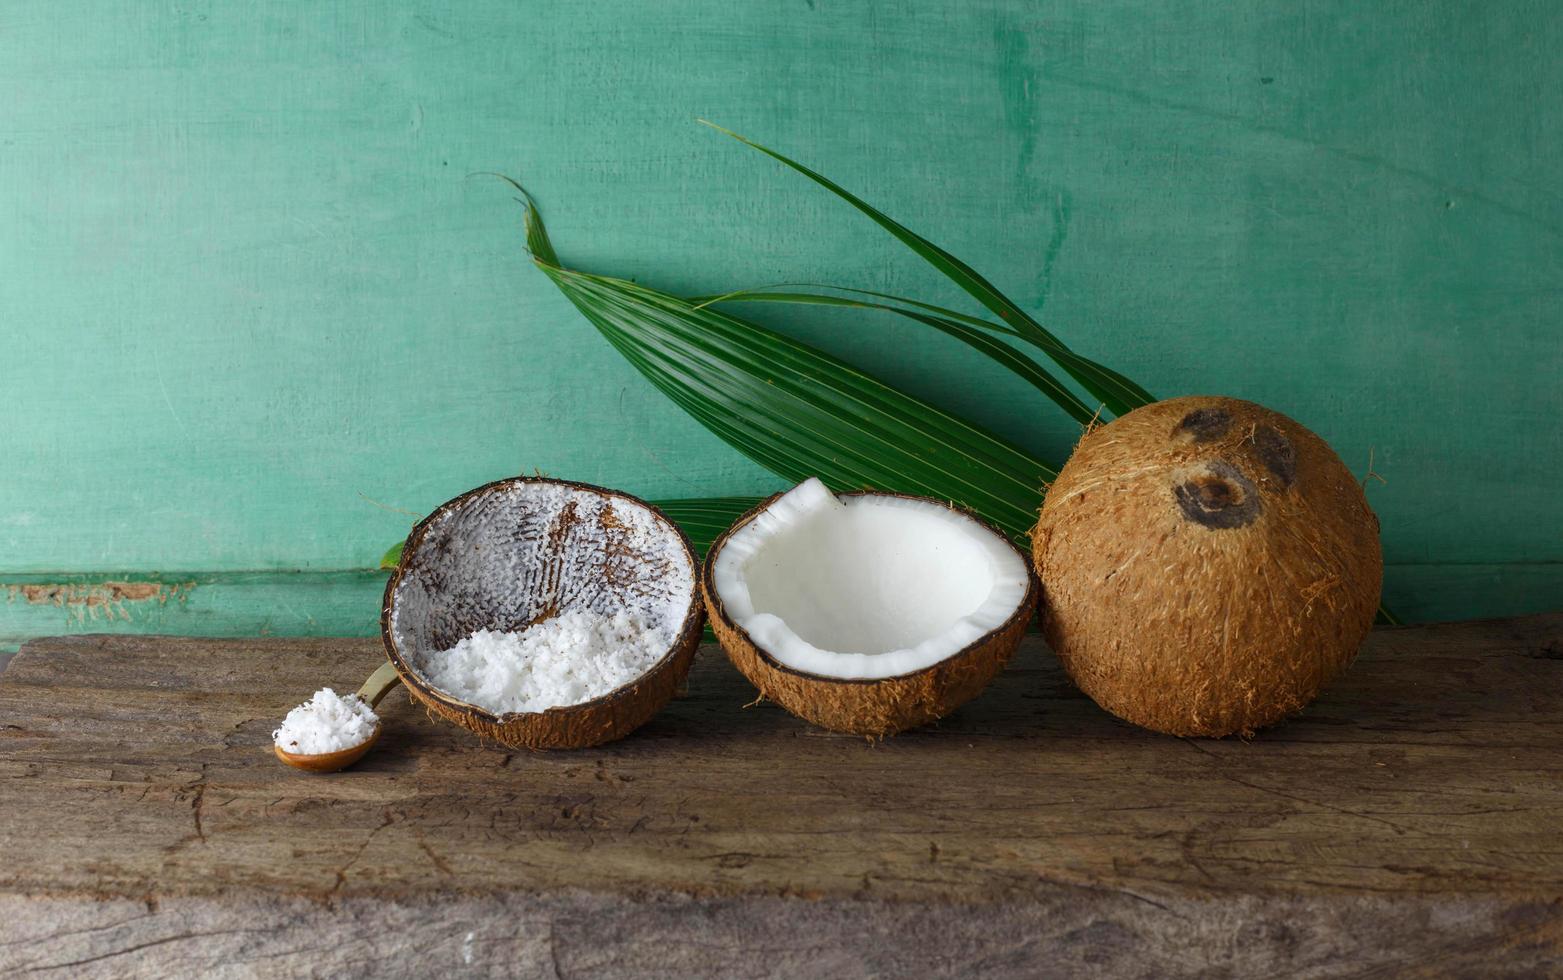 fräsch och läcker kokos foto